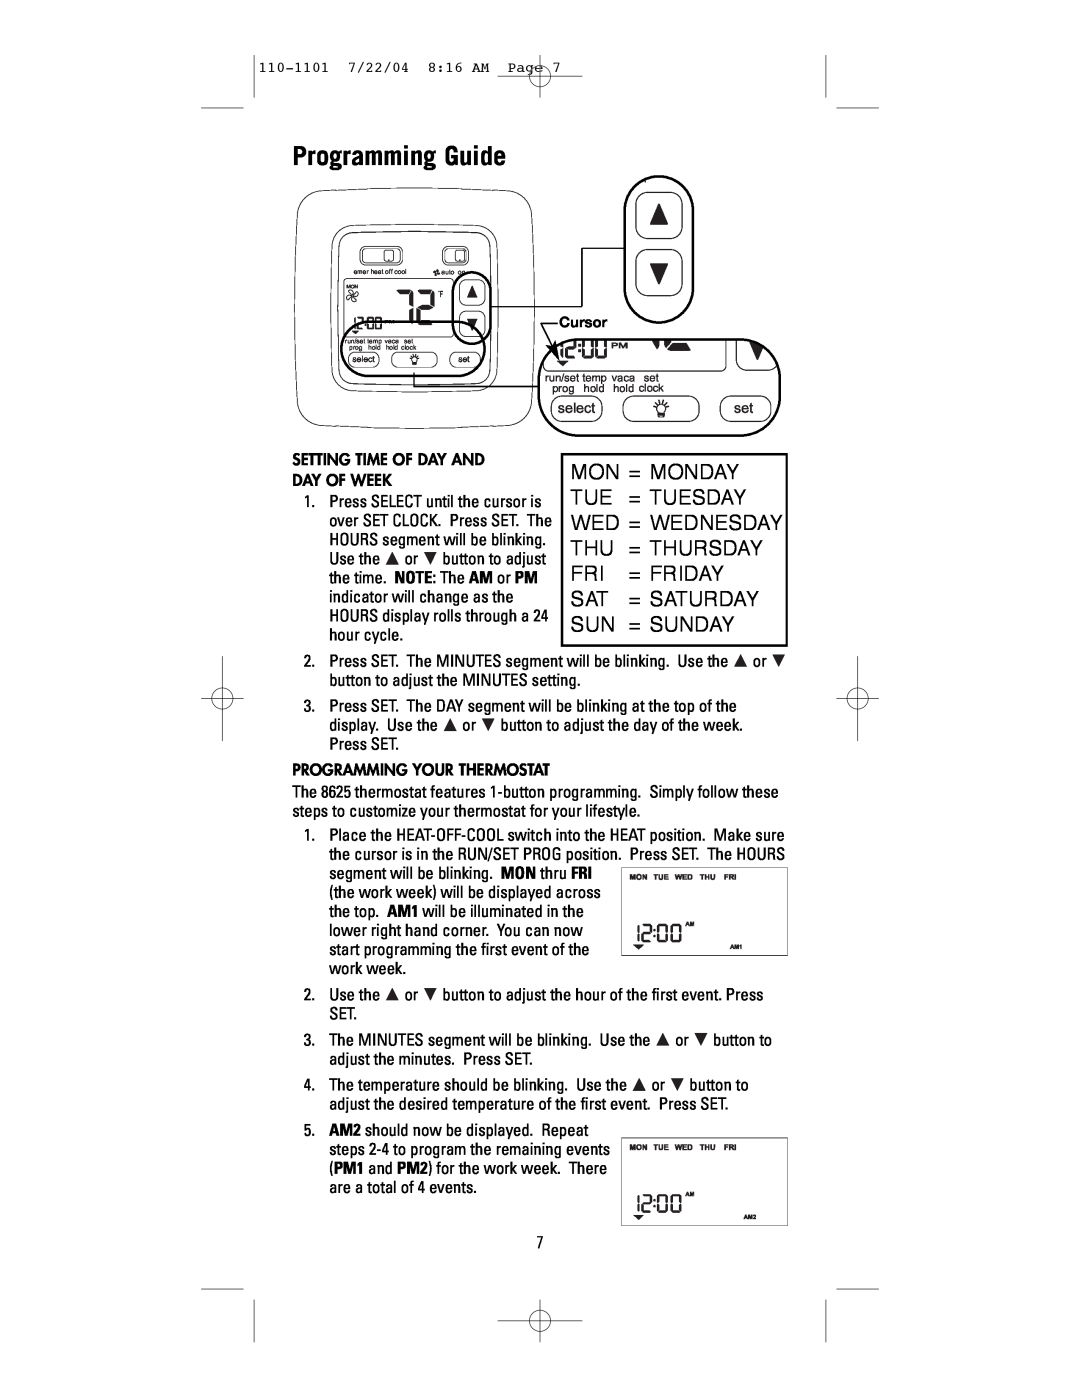 NewAir 8625 user manual Programming Guide 